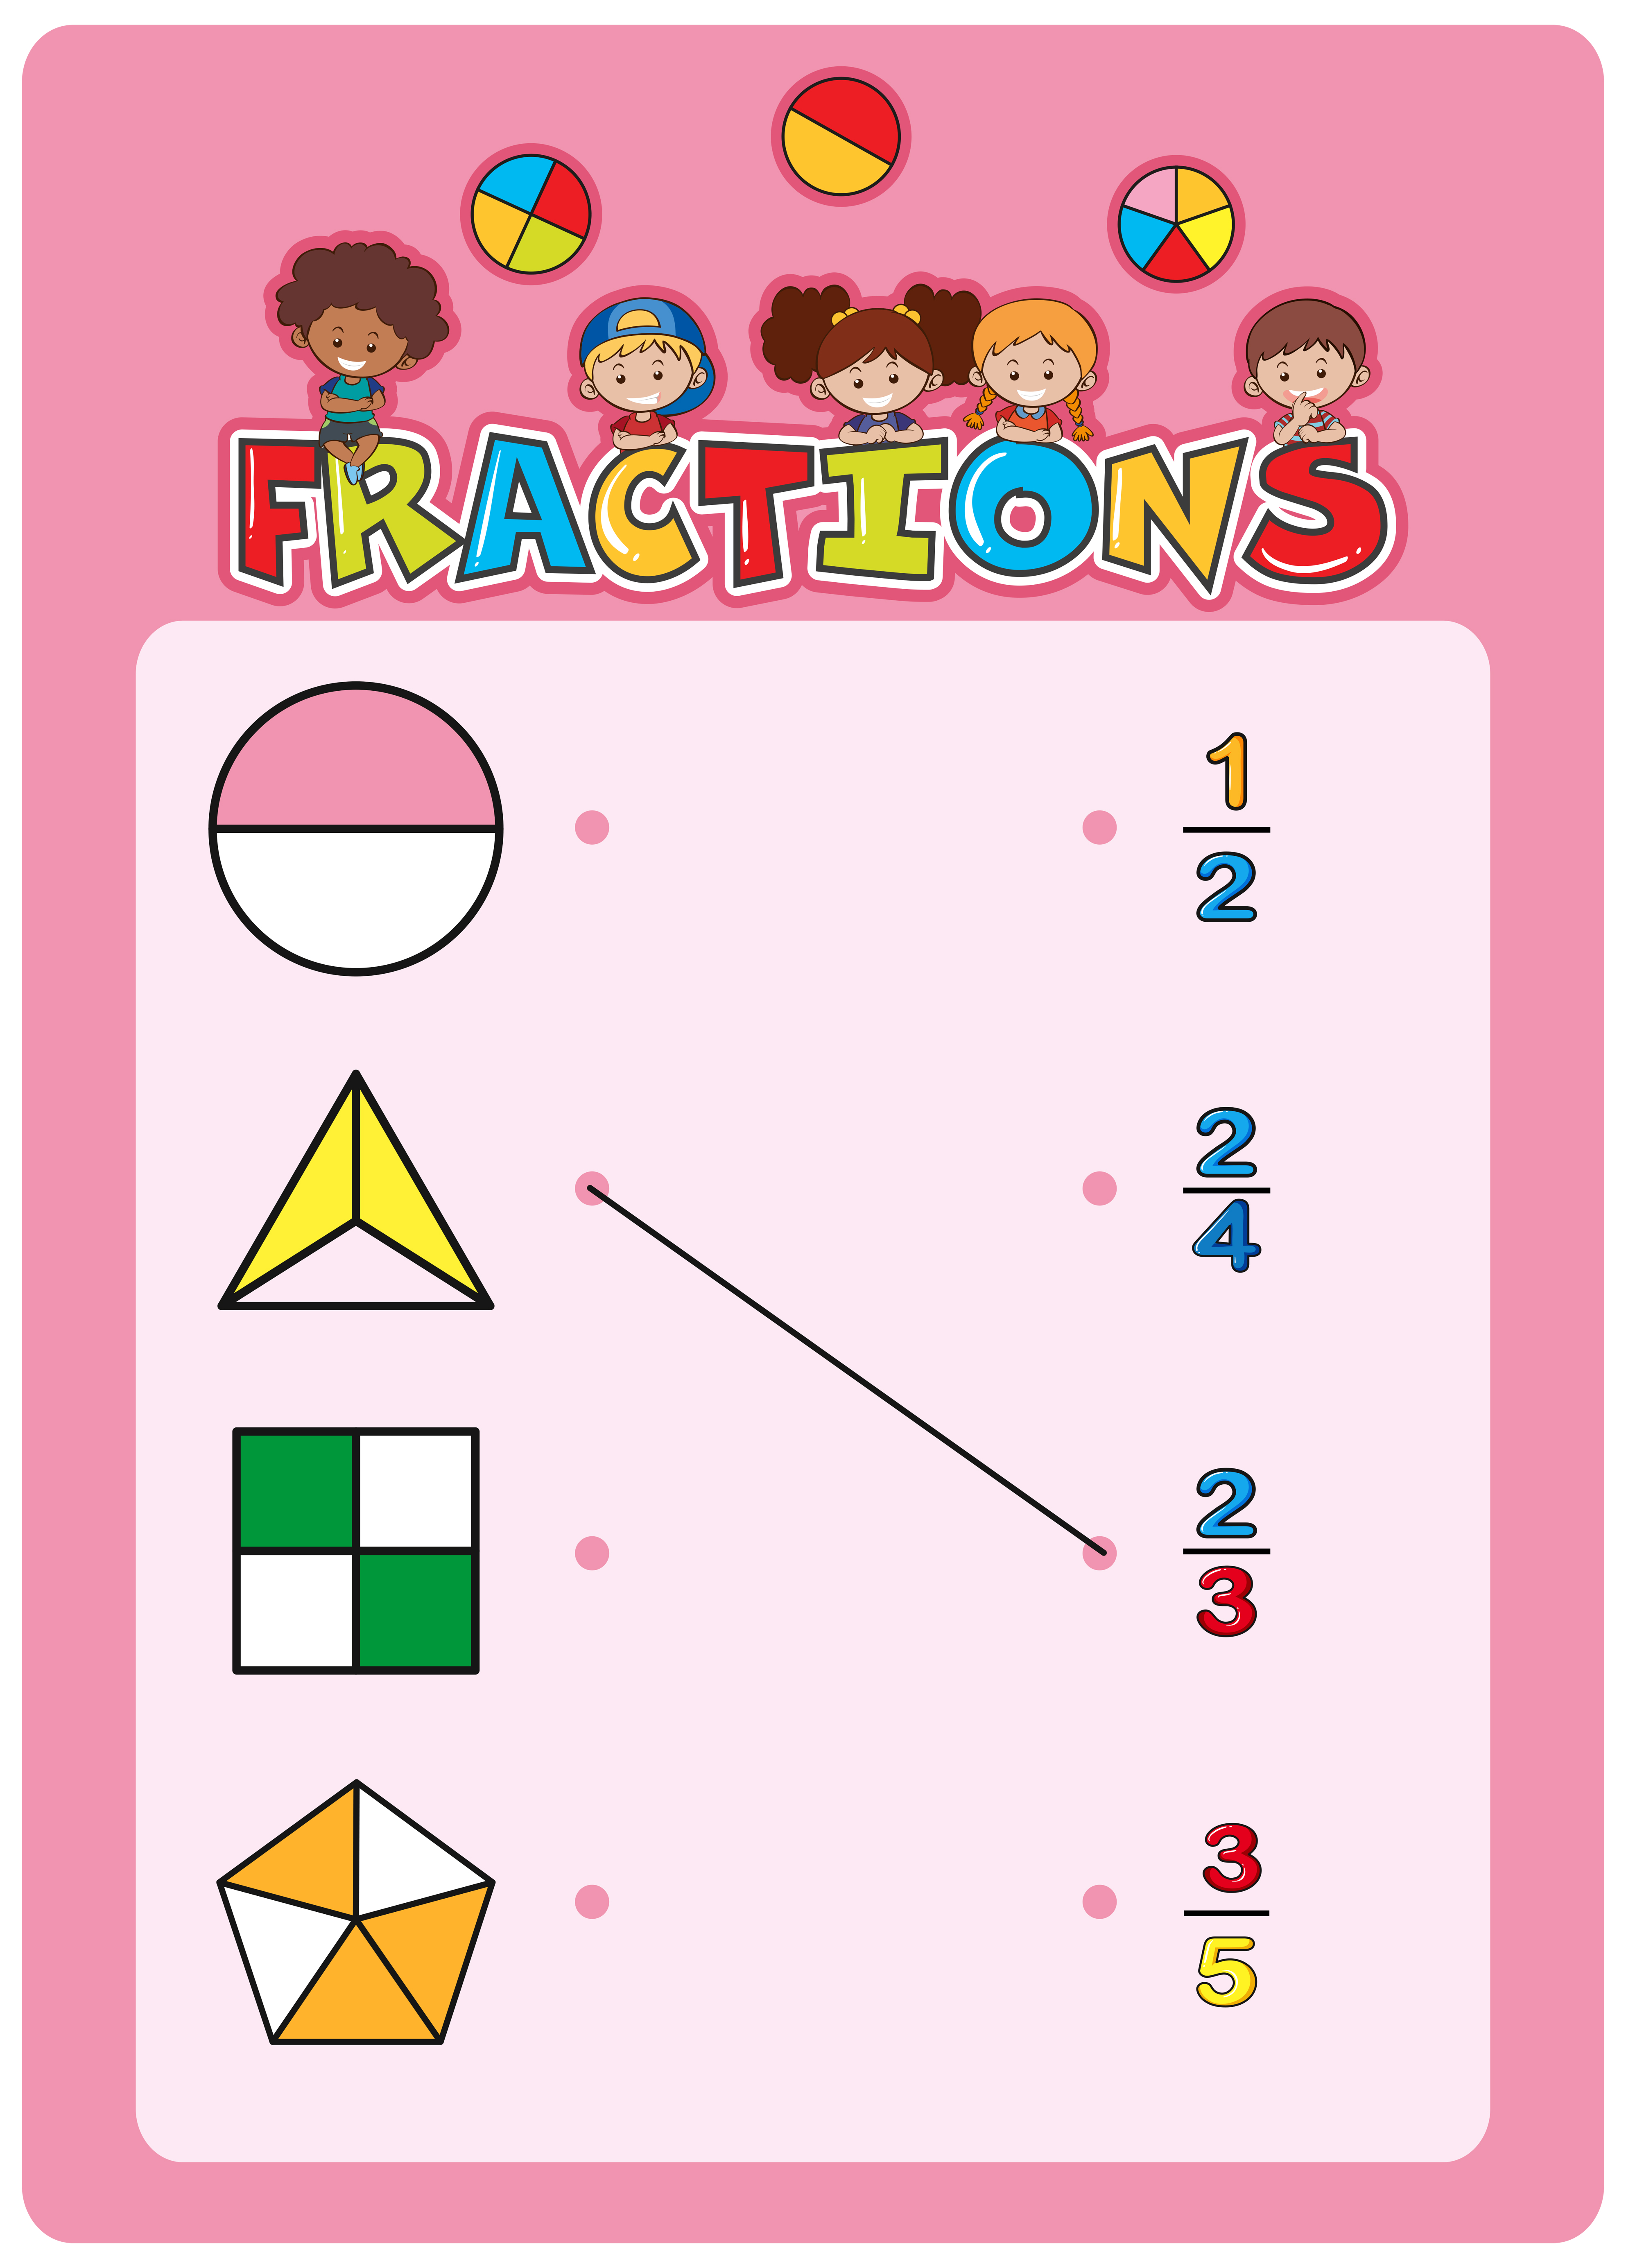 a math fractions worksheet 419121 vector art at vecteezy